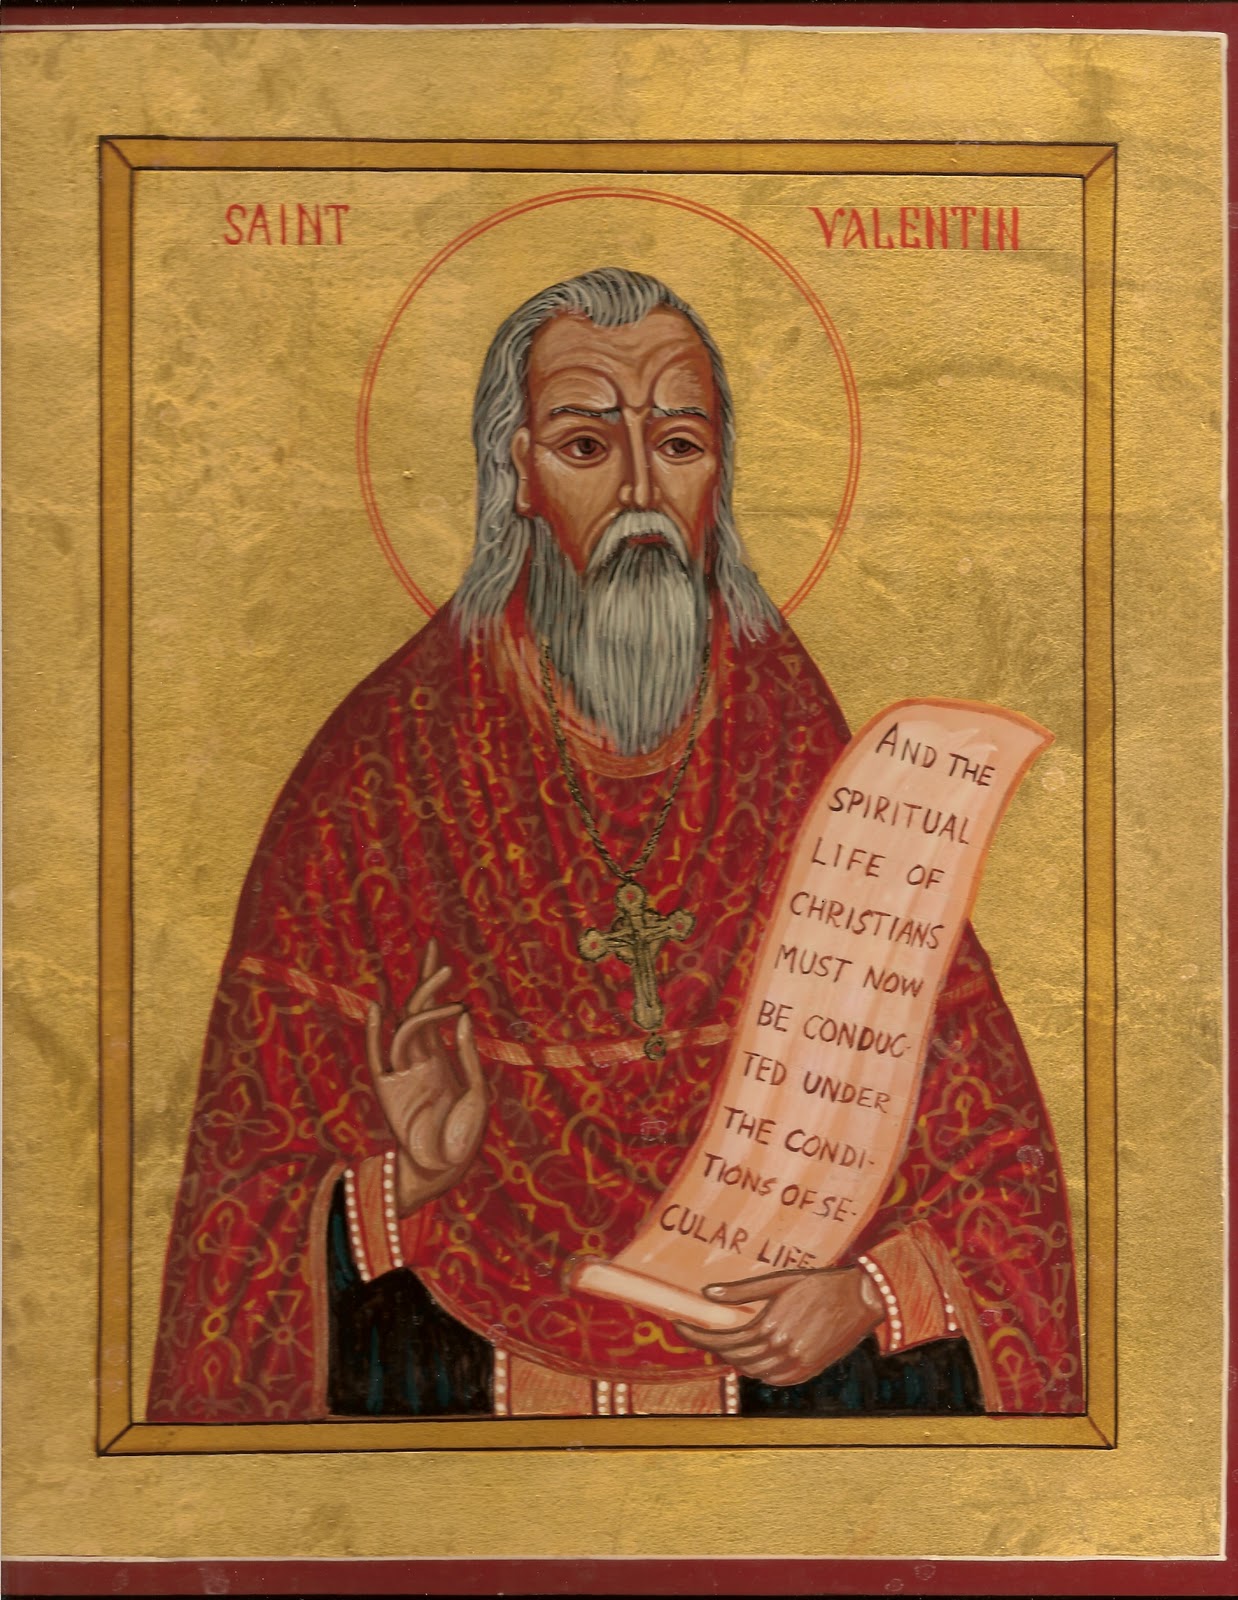 St. Valentine